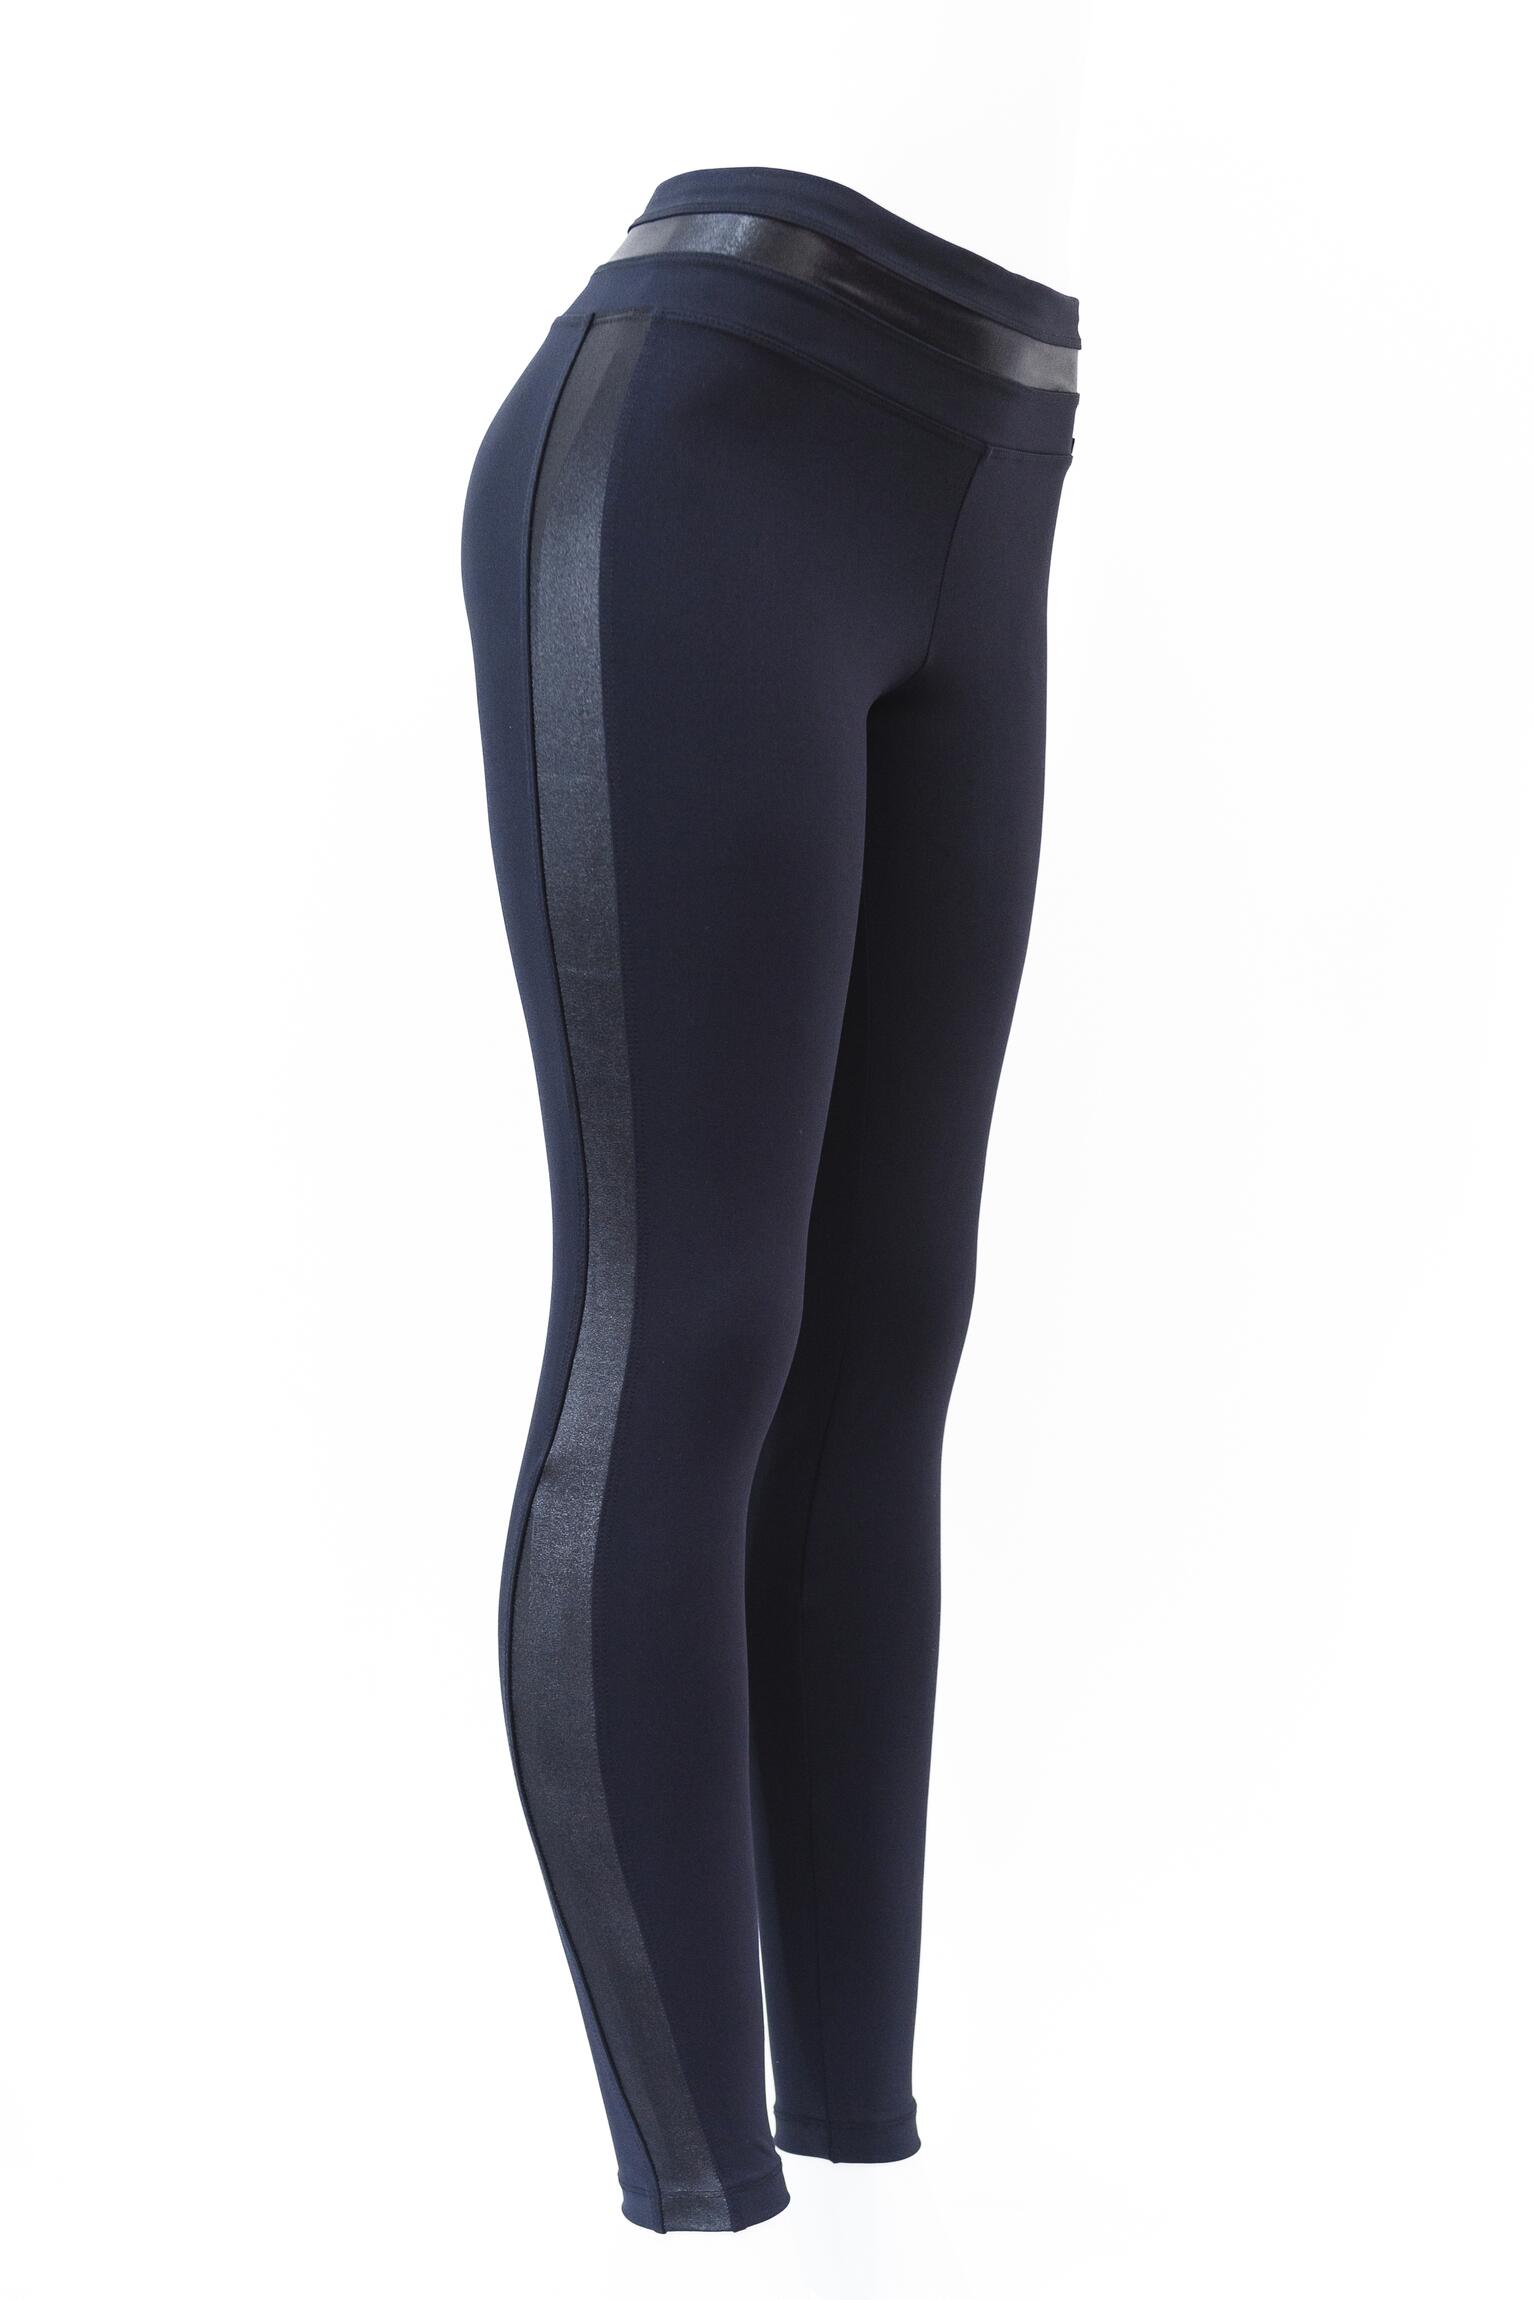 Comprar Legging Onix Syrah - Recorte Lateral - R$245,90 - Mia Ferrera  Activewear